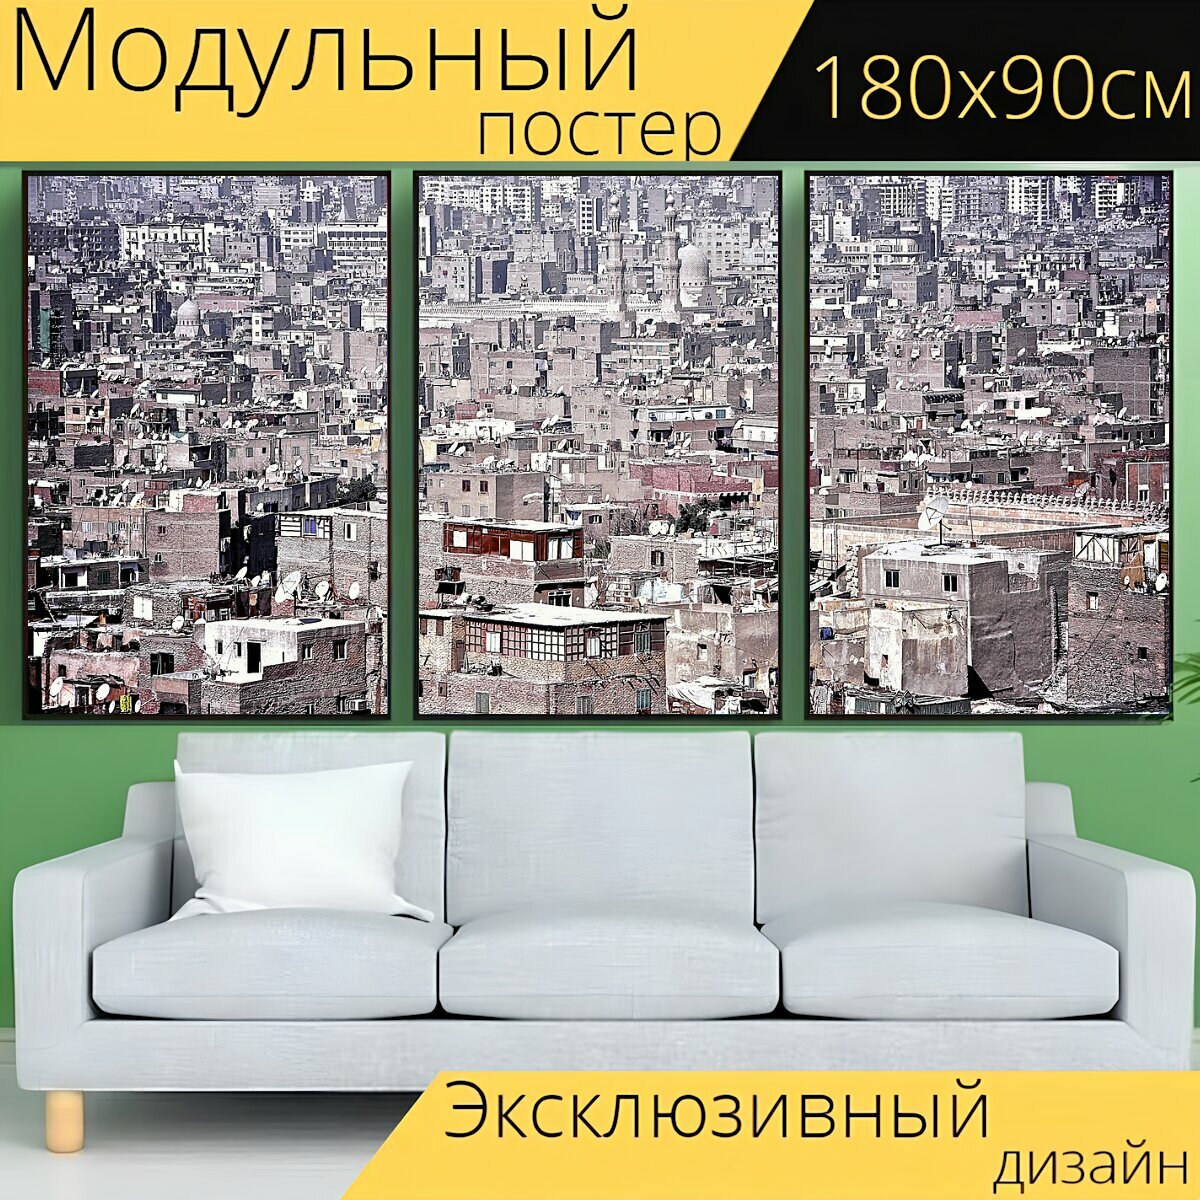 Модульный постер "Город, городской ландшафт, панорама" 180 x 90 см. для интерьера